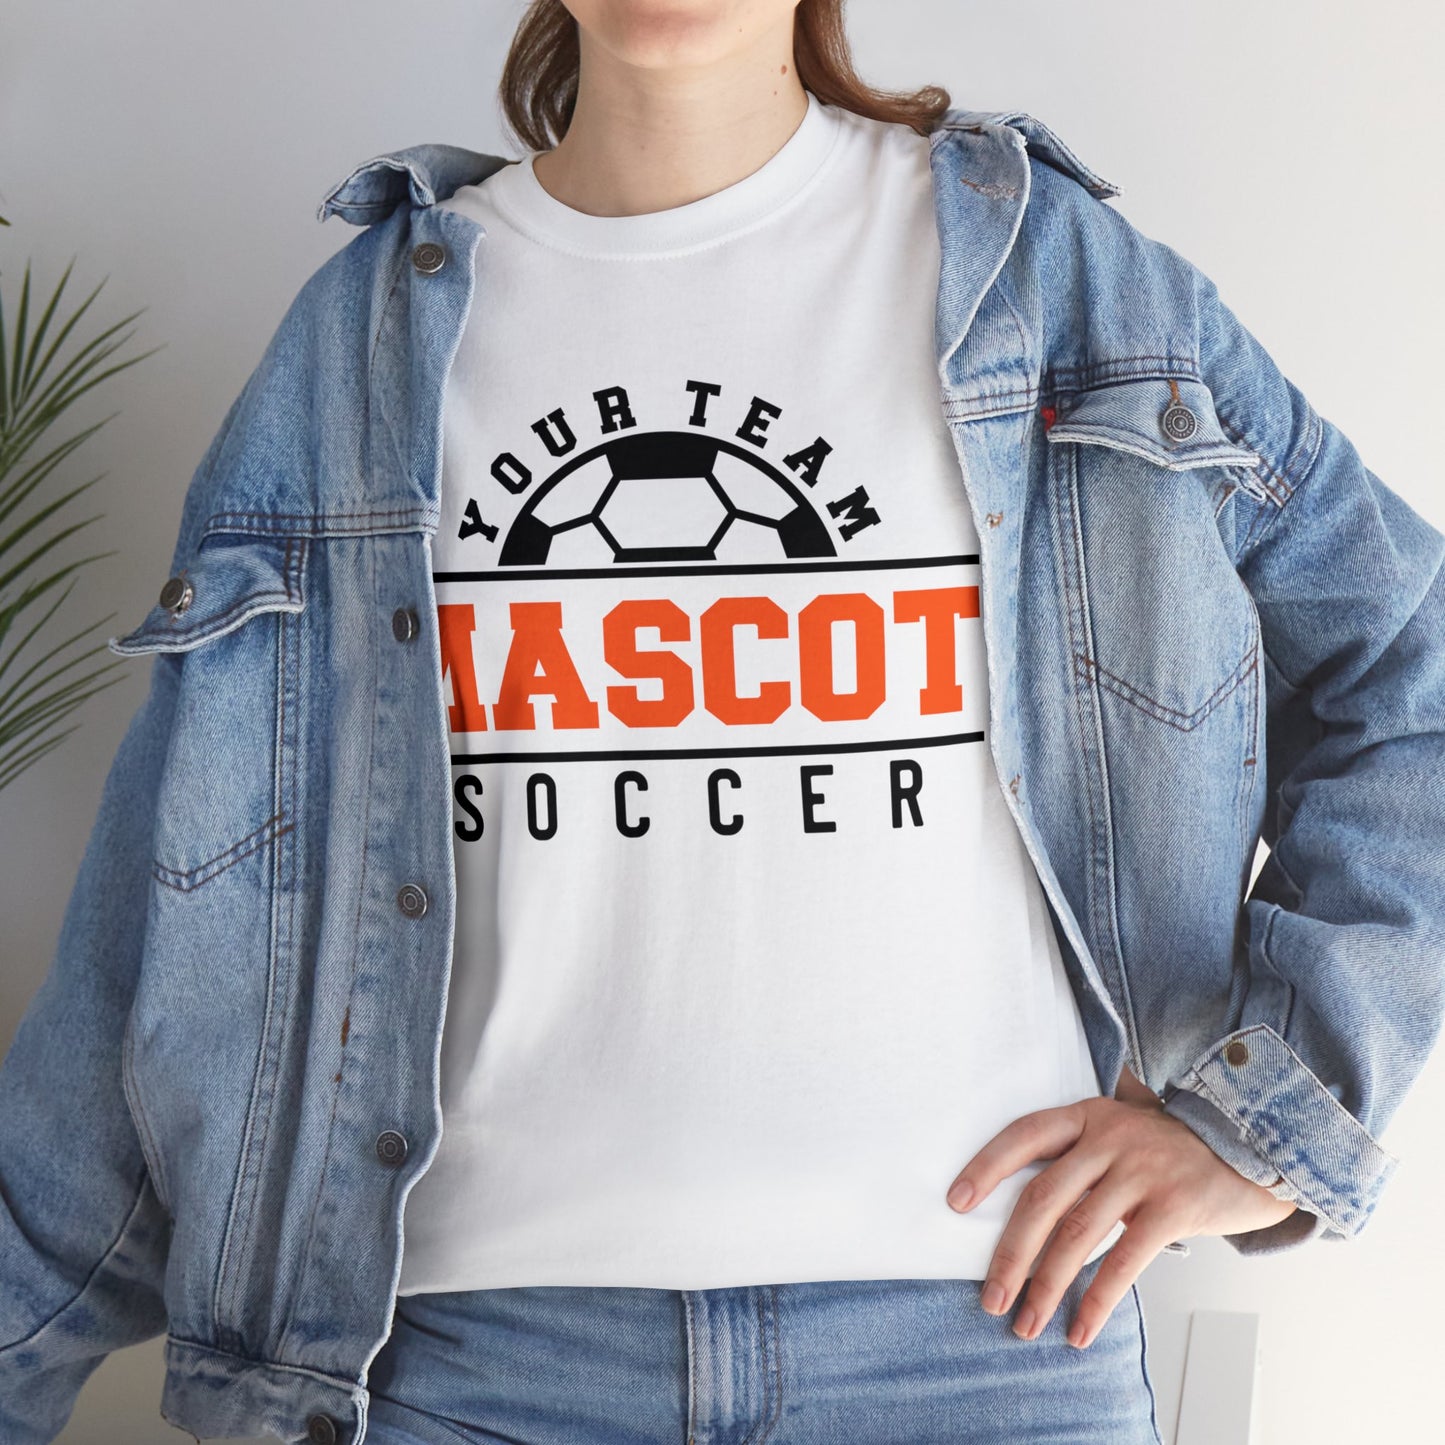 Custom School and Mascot SOCCER T-Shirt